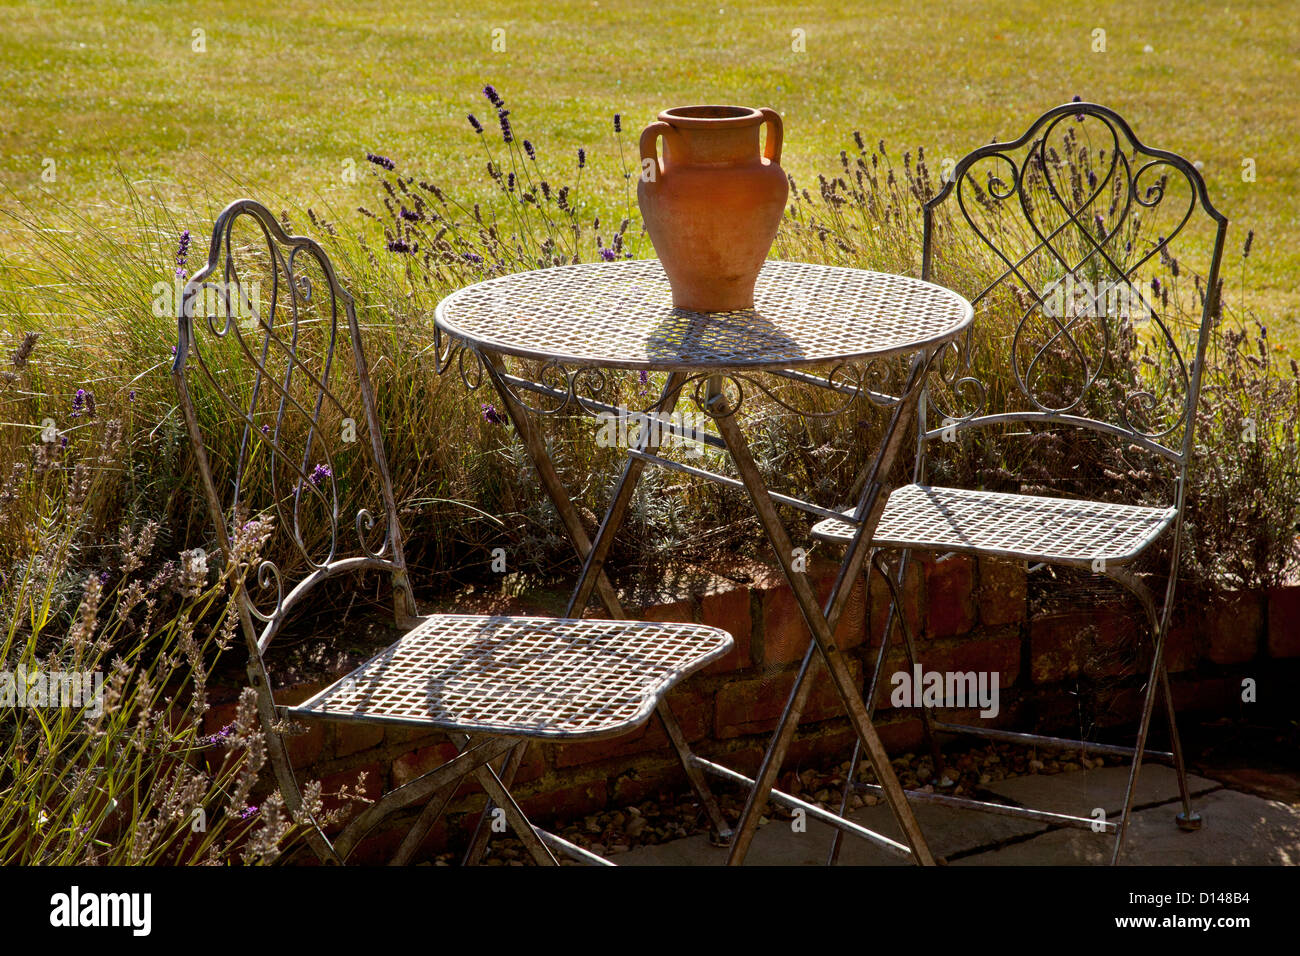 Metal French style mobilier de jardin table et chaises avec pot en terre cuite à l'été jardin Anglais Banque D'Images